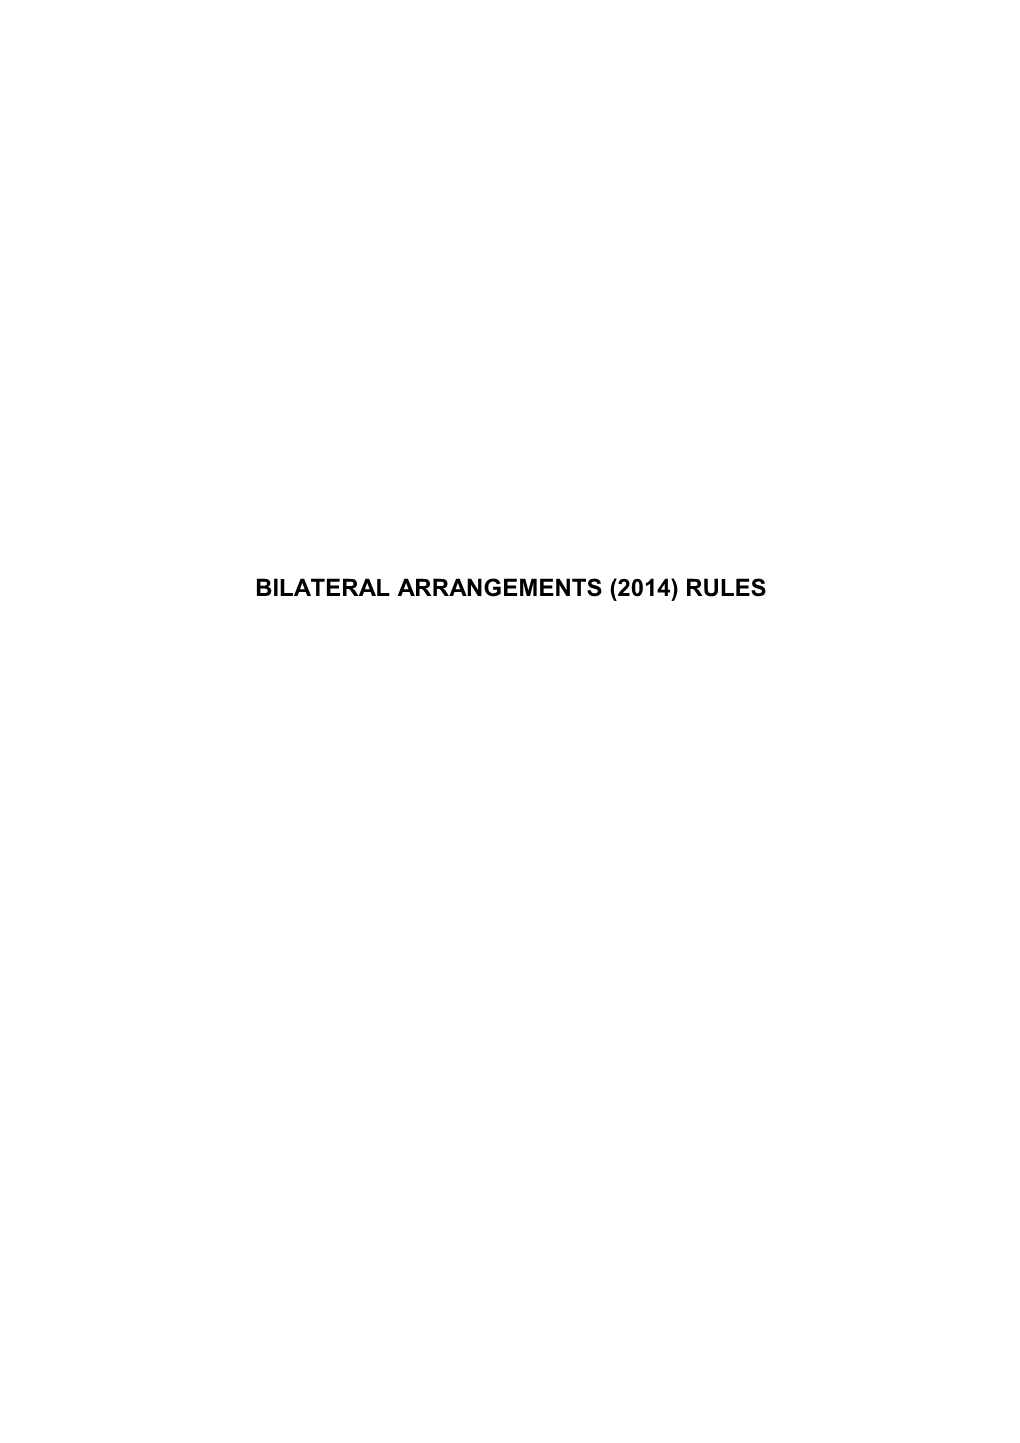 Bilateral Arrangements Rules 2014